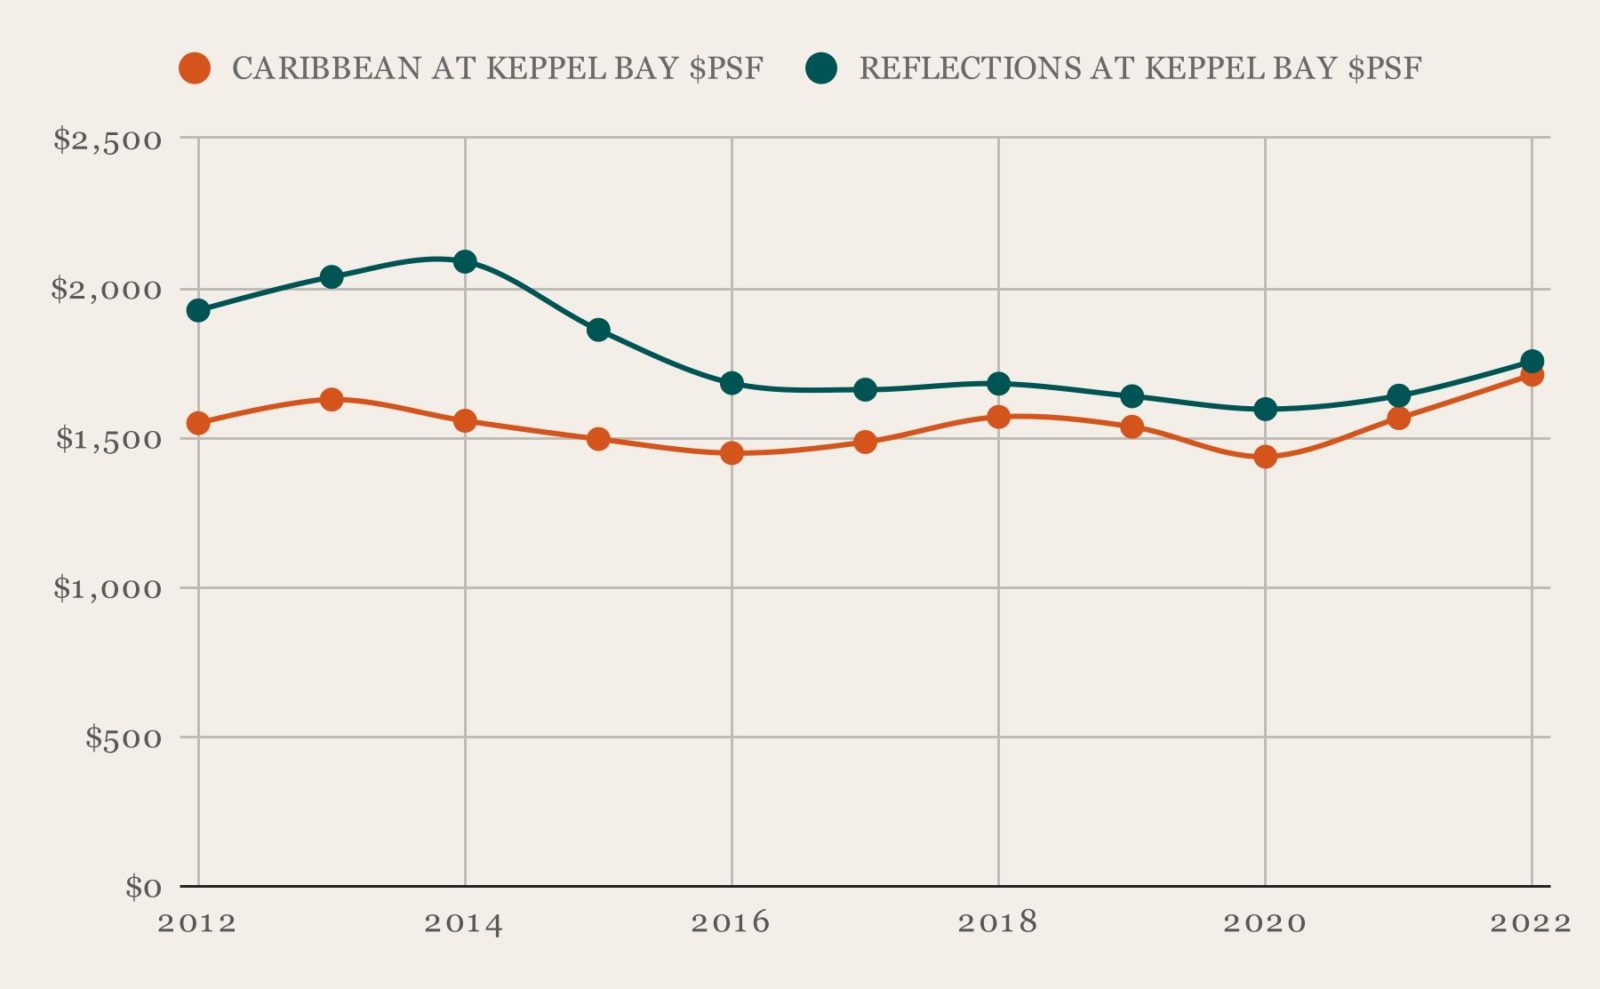 Caribbean vs Reflections at Keppel Bay PSF 1